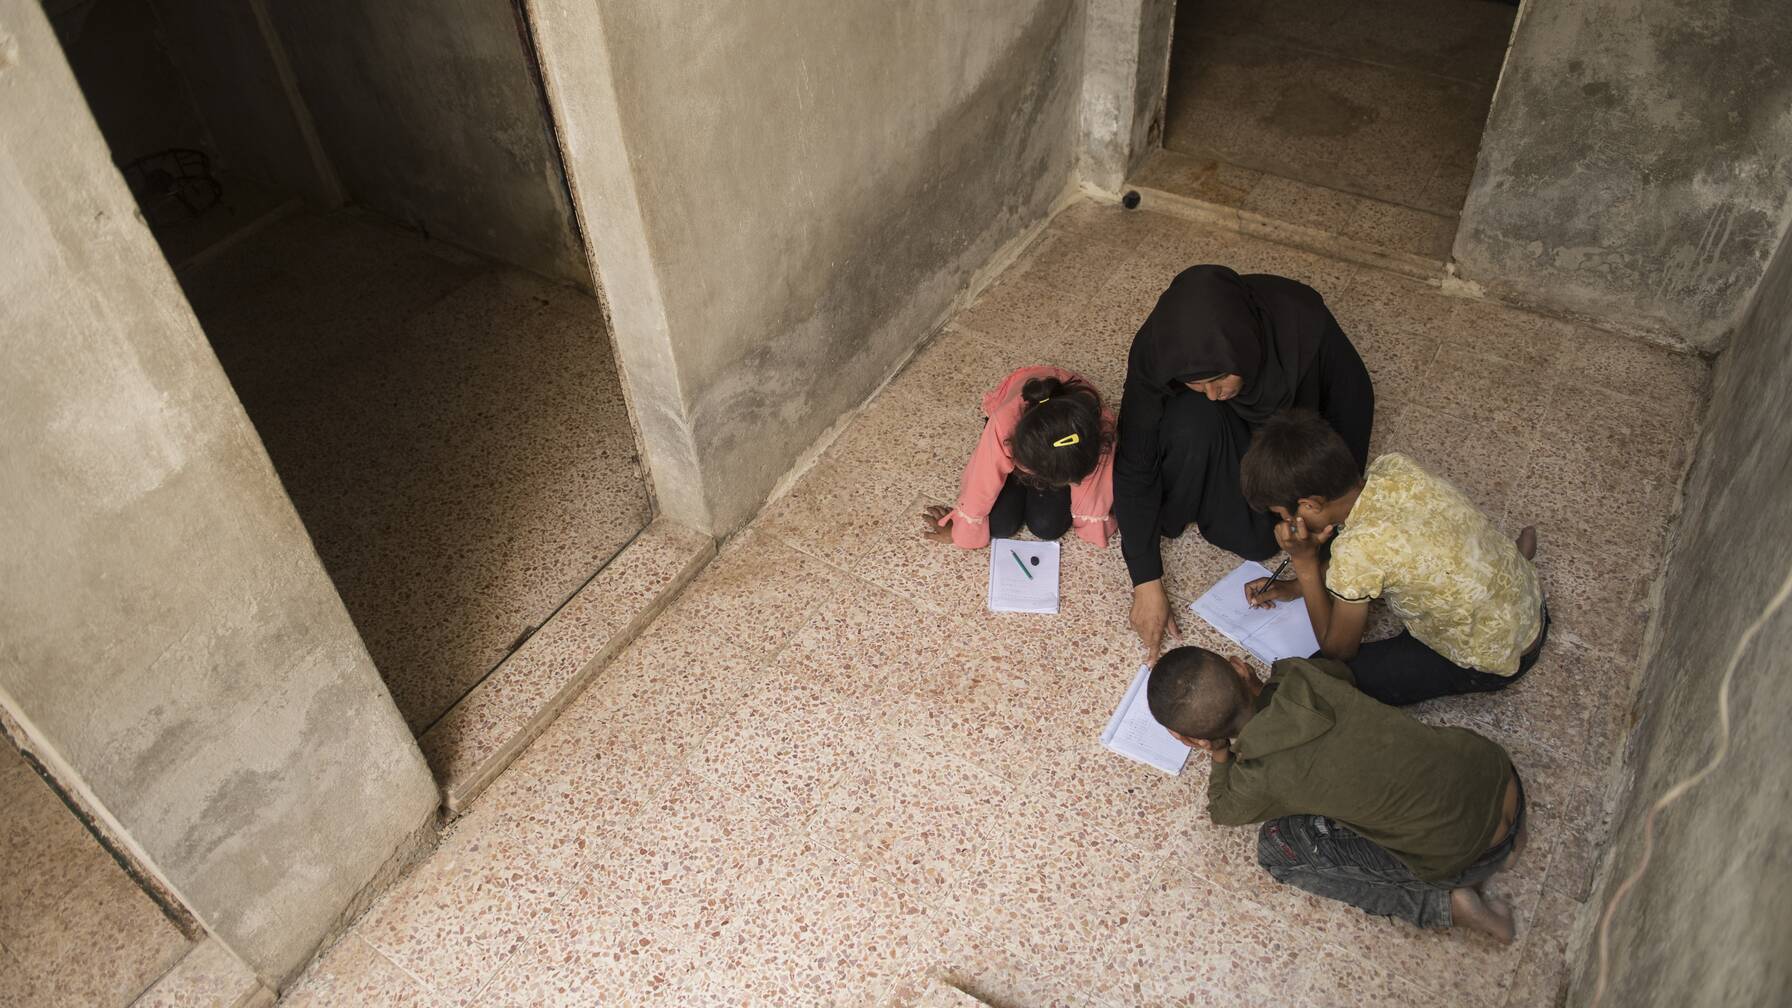 Fatima aide ses enfants à faire leurs devoirs. Elle n’a pas encore eu les moyens d’acheter une table et des chaises. La cage d'escalier est le meilleur éclairage - il n'y a pas d'électricité dans la maison.